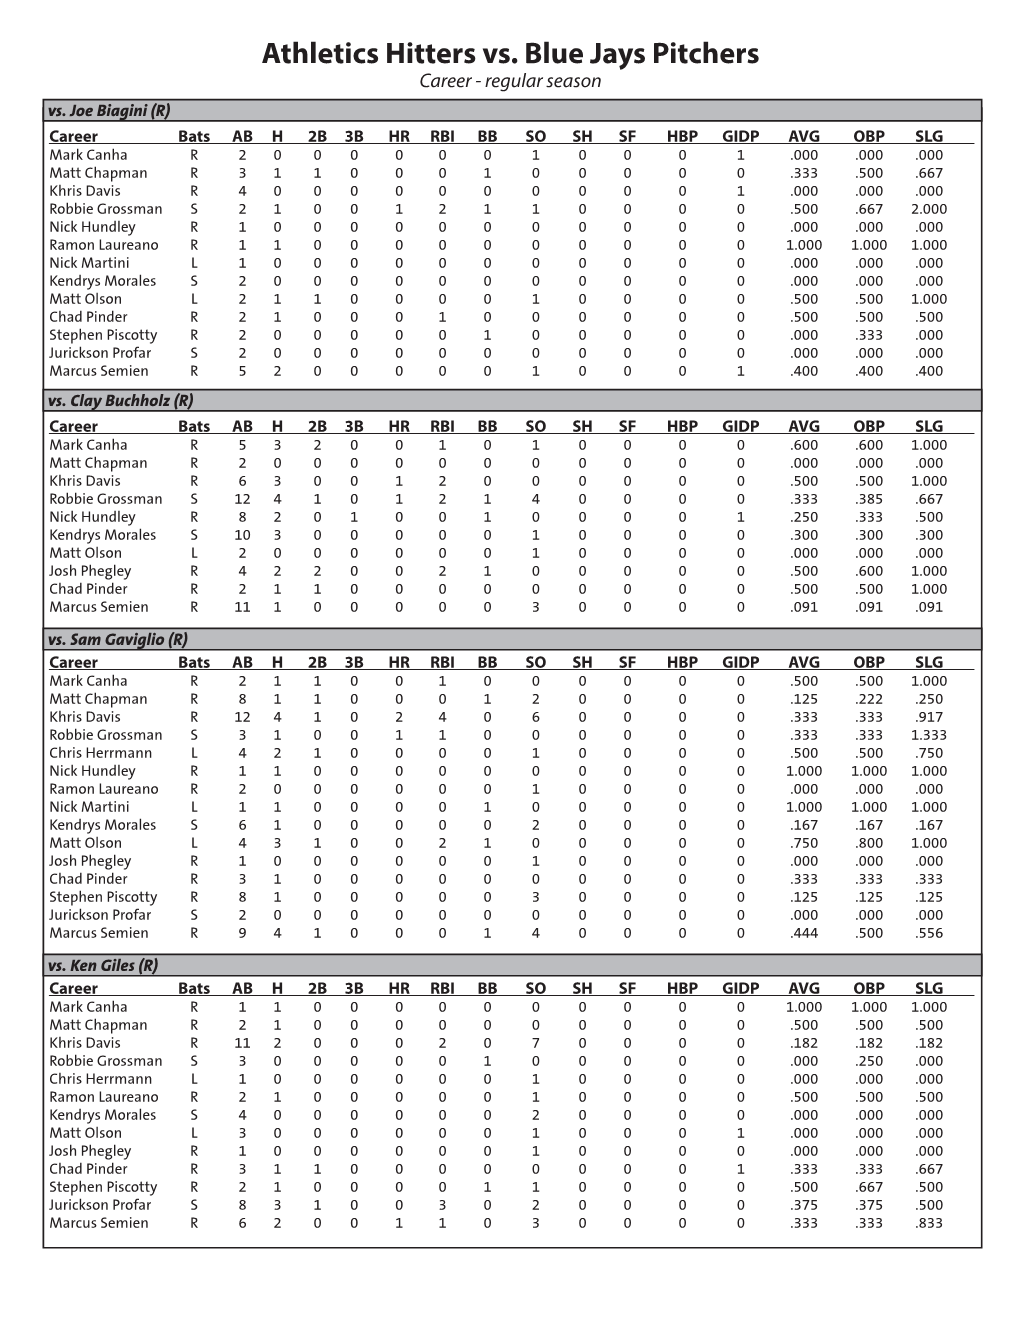 Athletics Hitters Vs. Blue Jays Pitchers Career - Regular Season Vs